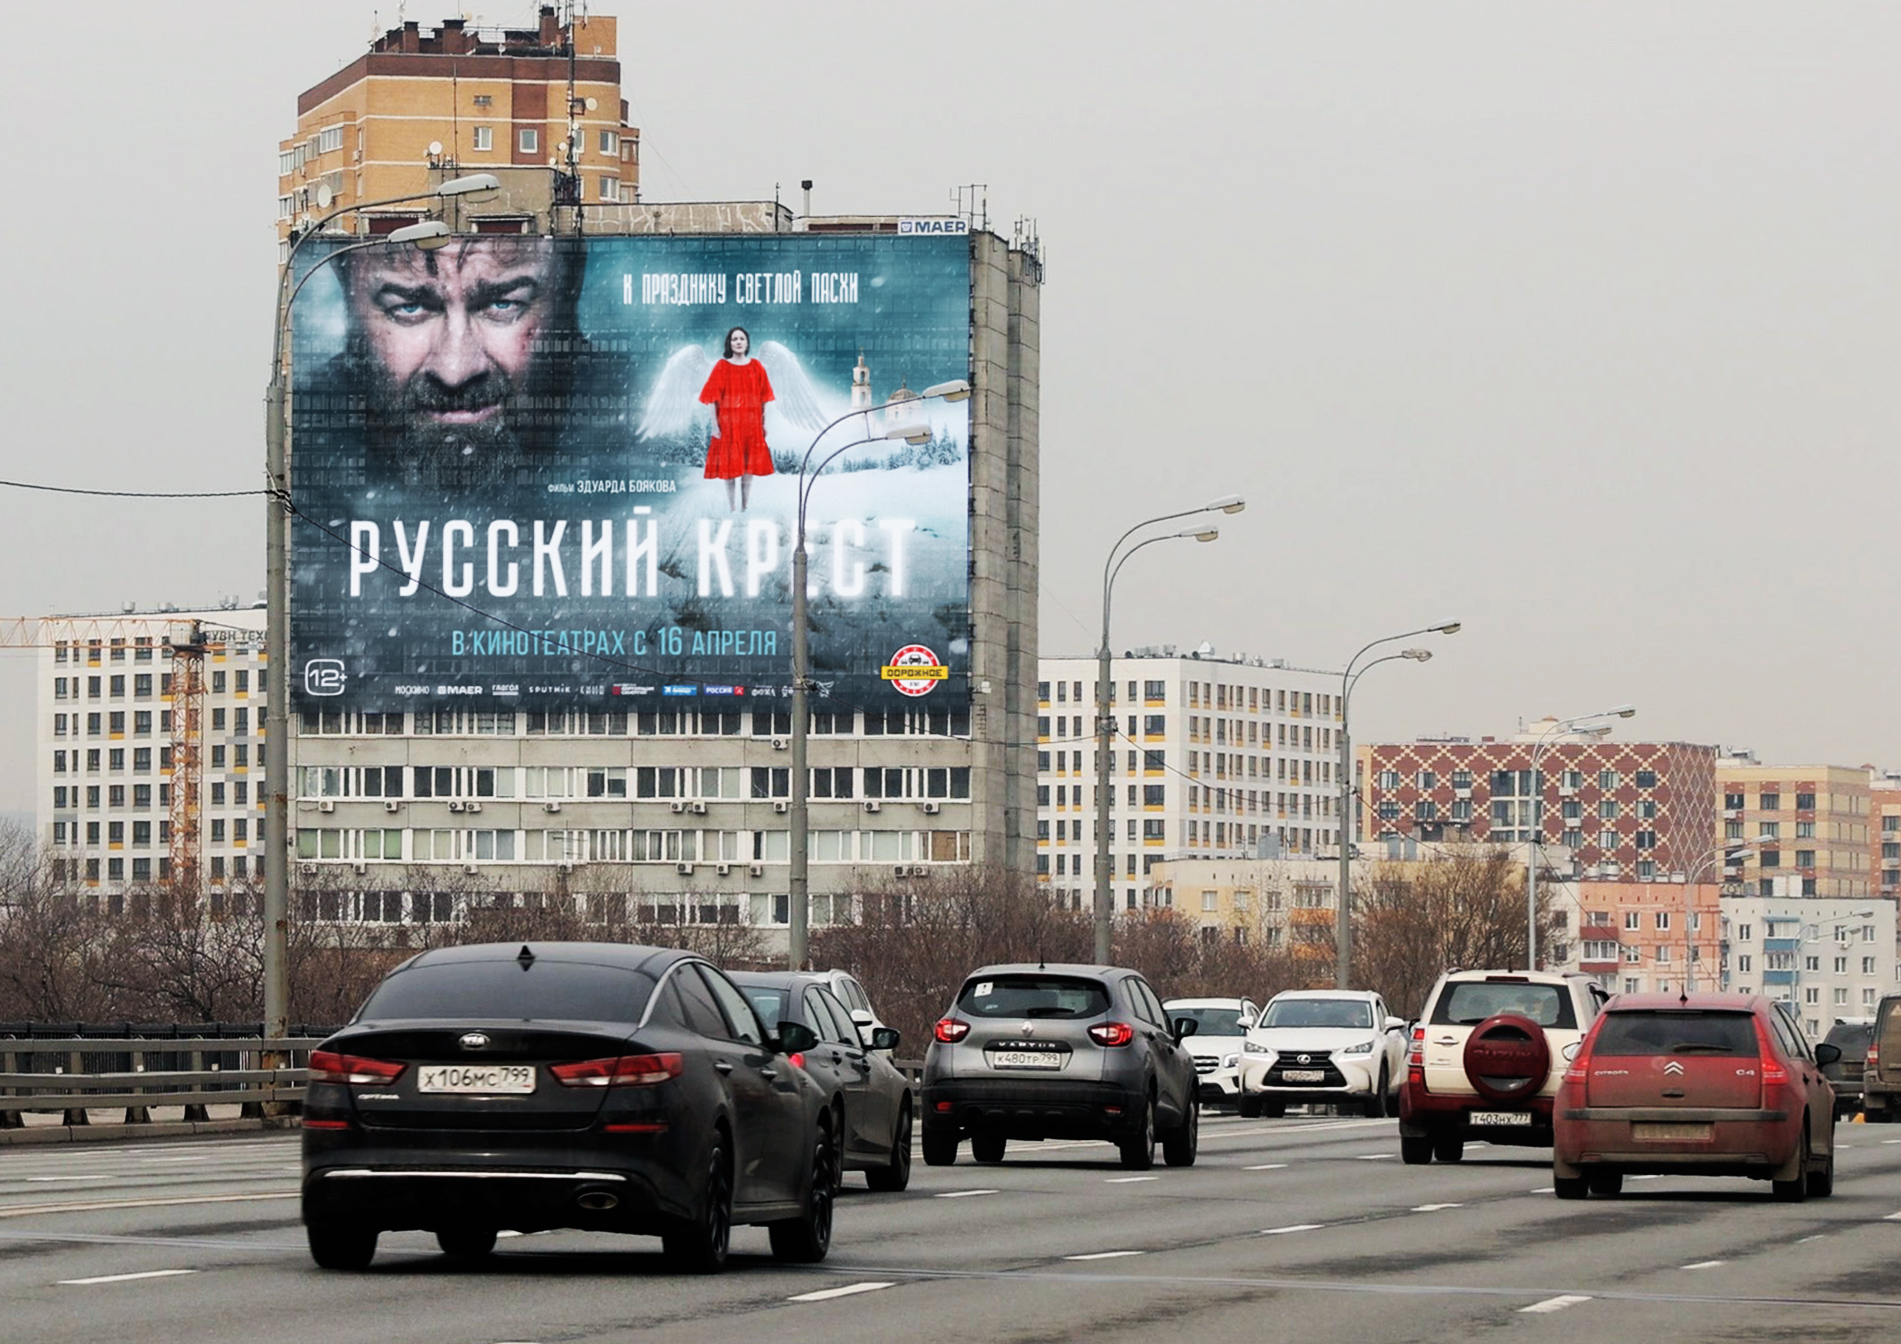 В течение ближайшего месяца творческая группа лично представит фильм во многих городах  страны – посвящённая ему медиакампания будет сопровождать премьеру в крупнейших городах России